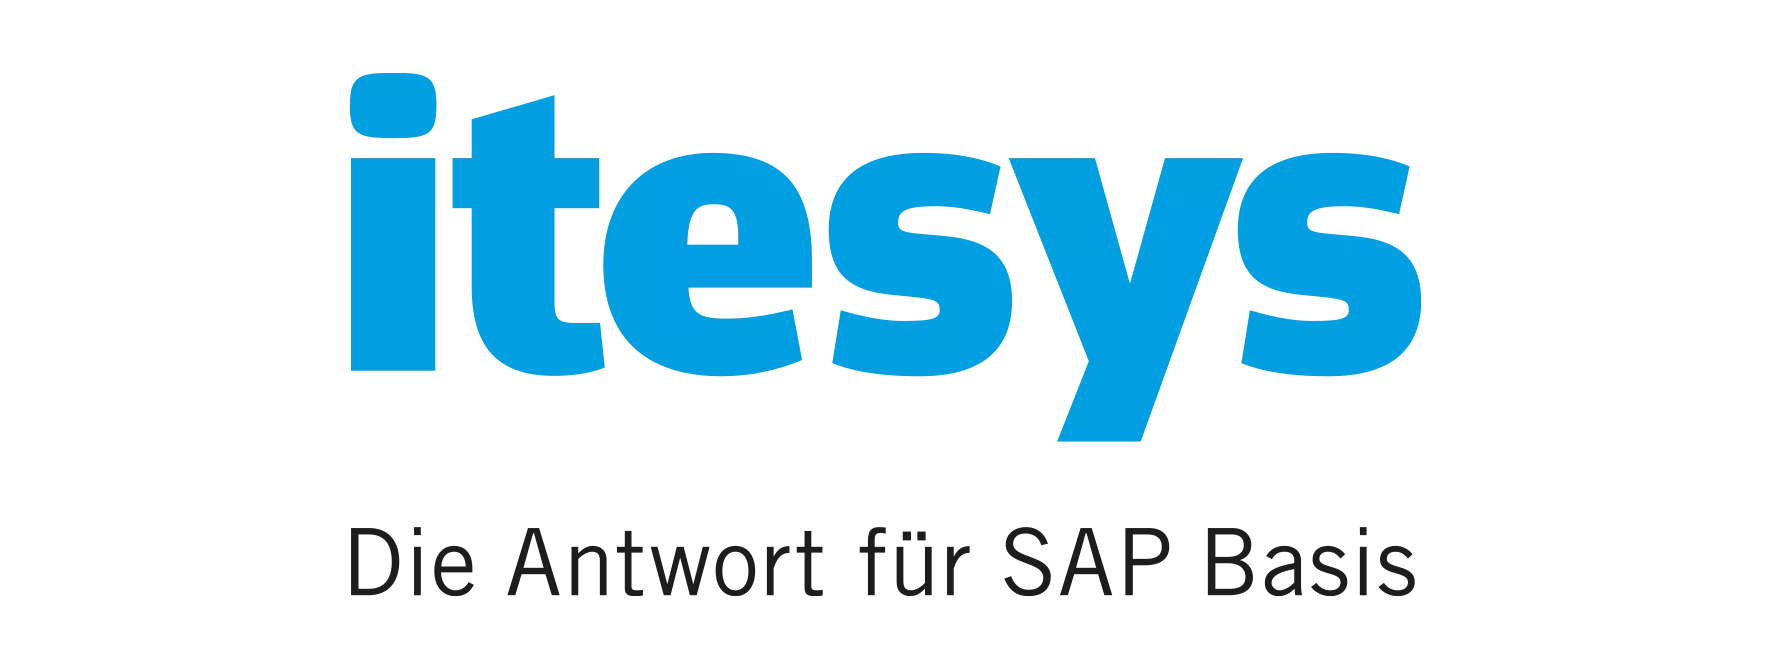 Itsesys Logo